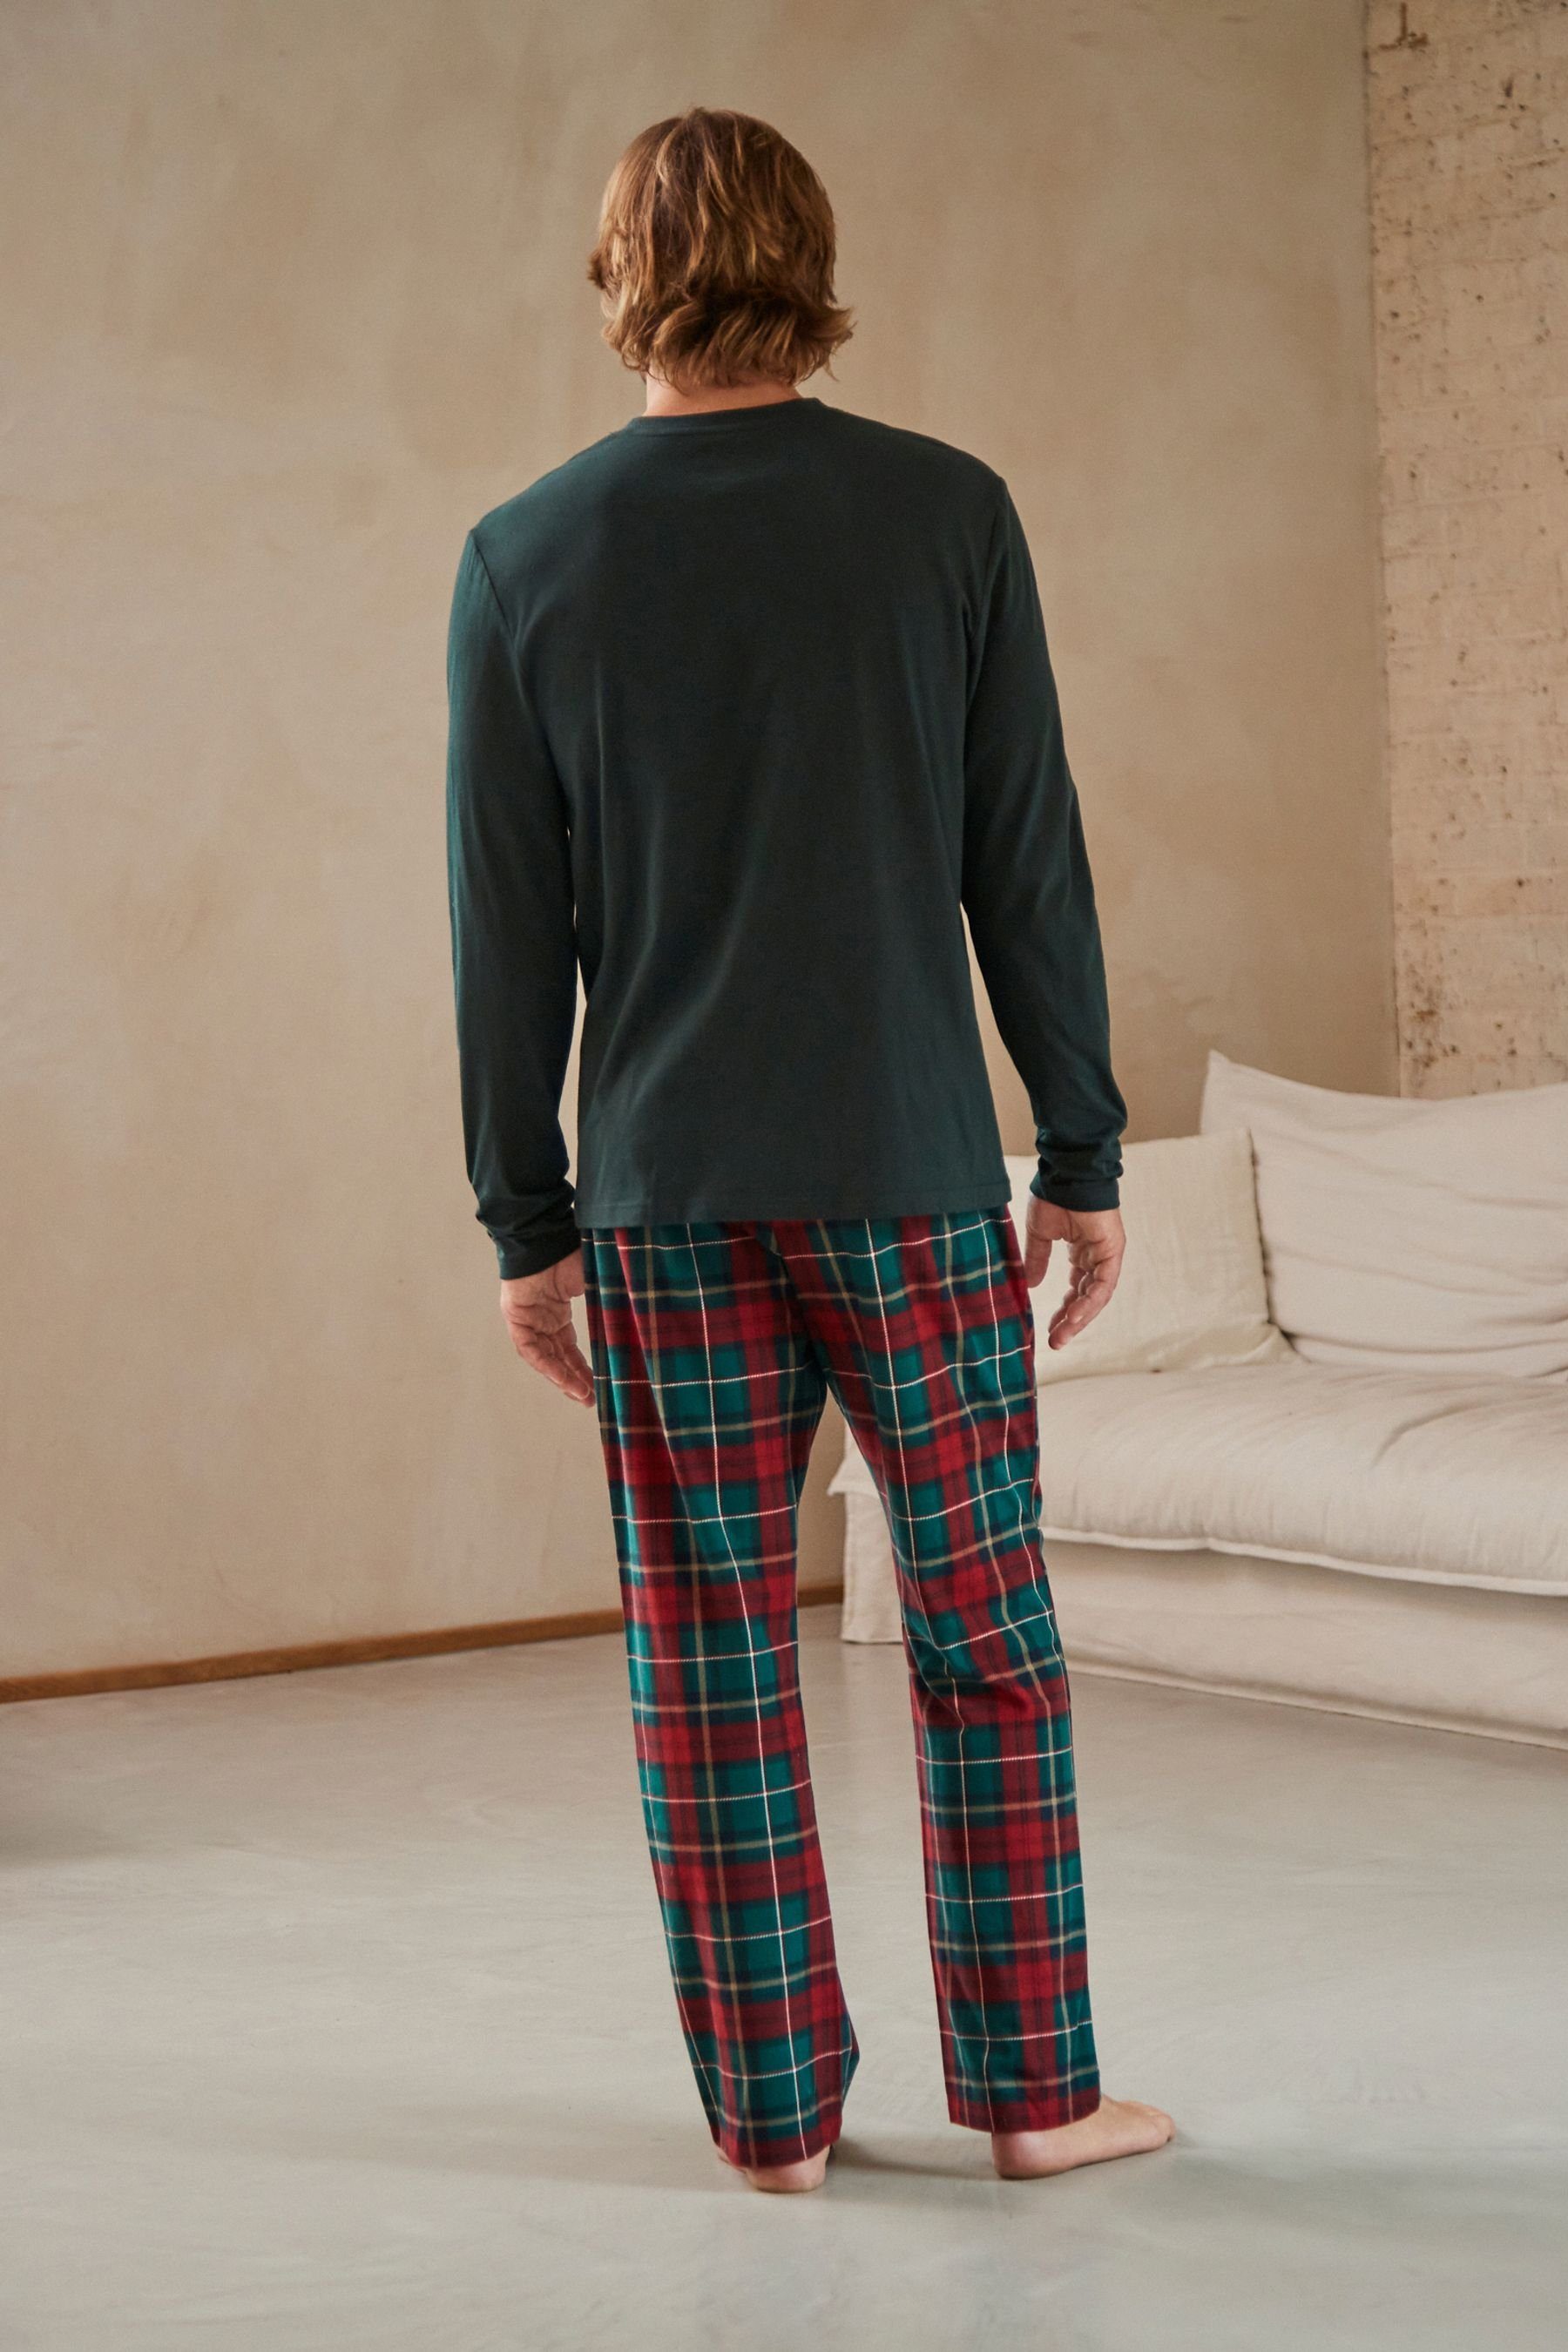 Next Pyjama Bequemer Schlafanzug tlg) Green/Red (2 Check Motionflex